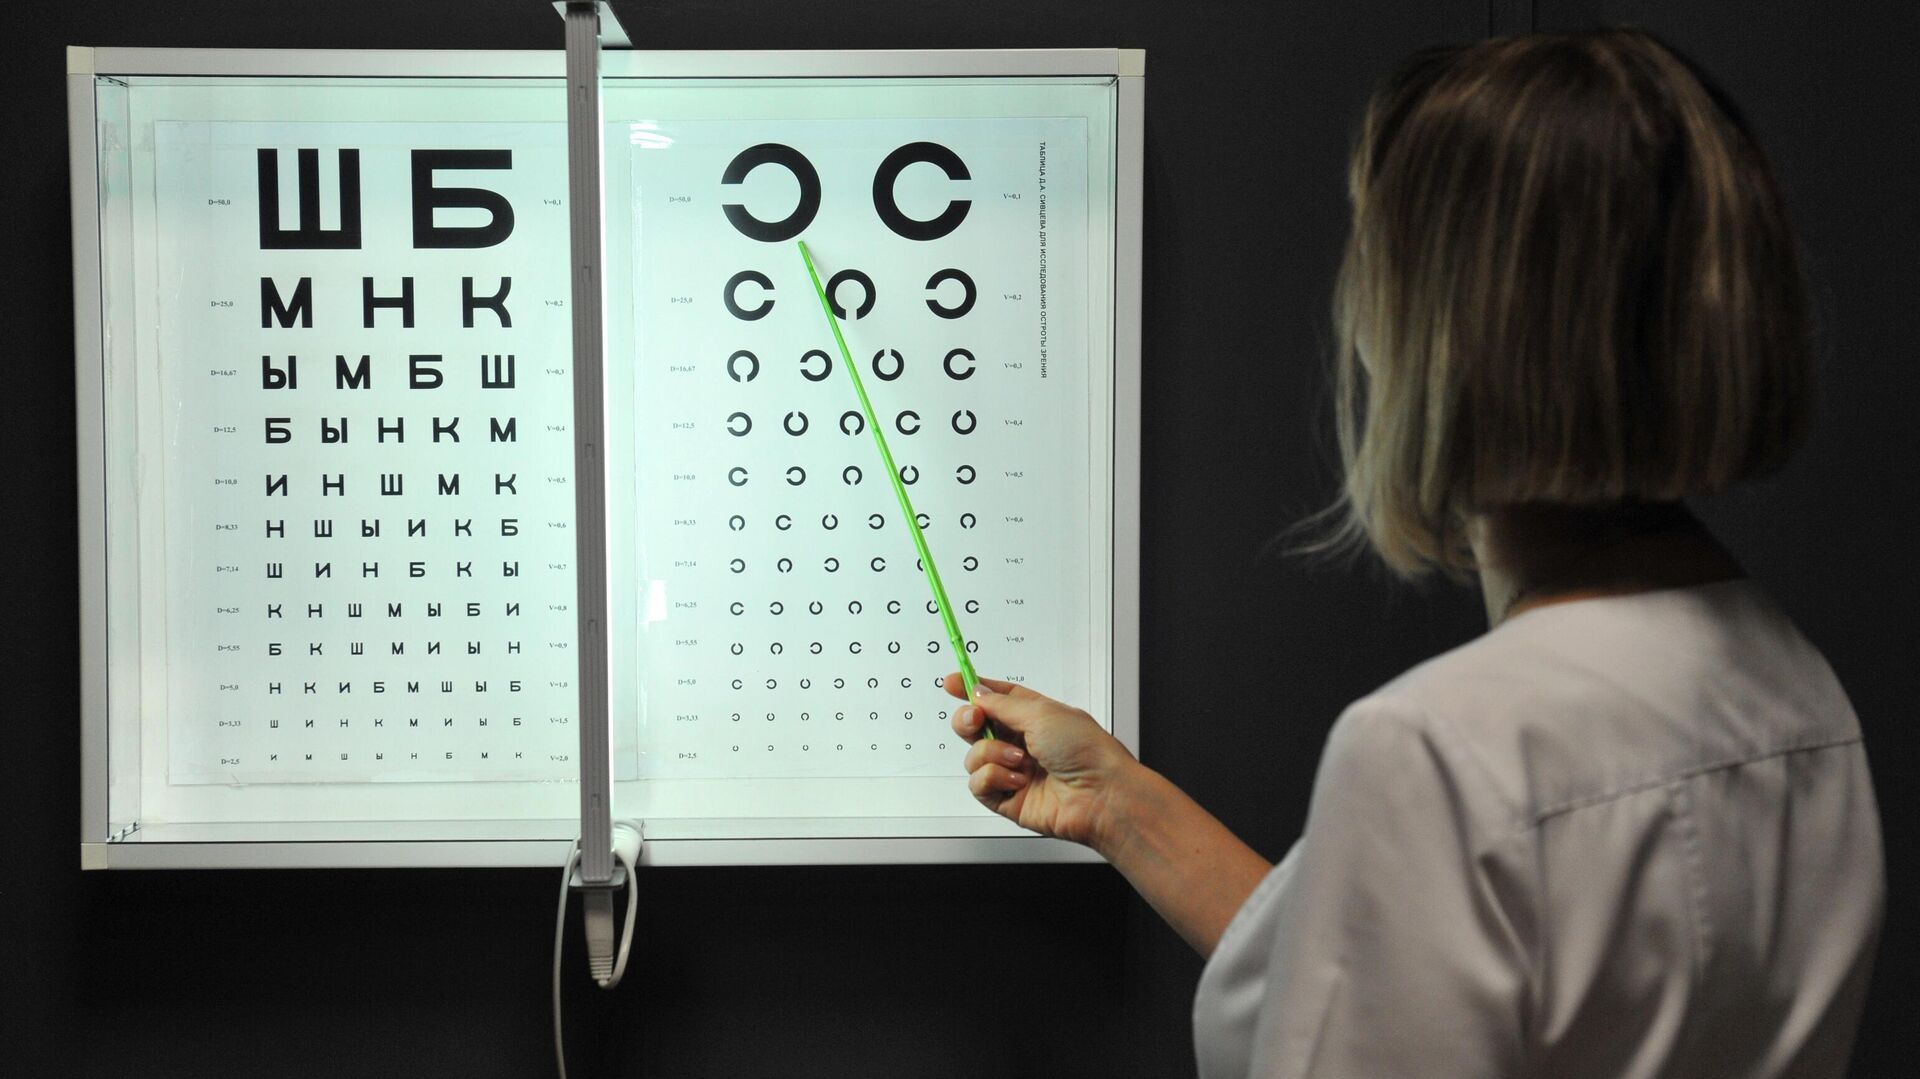 Таблица Сивцева для проверки остроты зрения в кабинете офтальмолога - РИА Новости, 1920, 20.04.2020